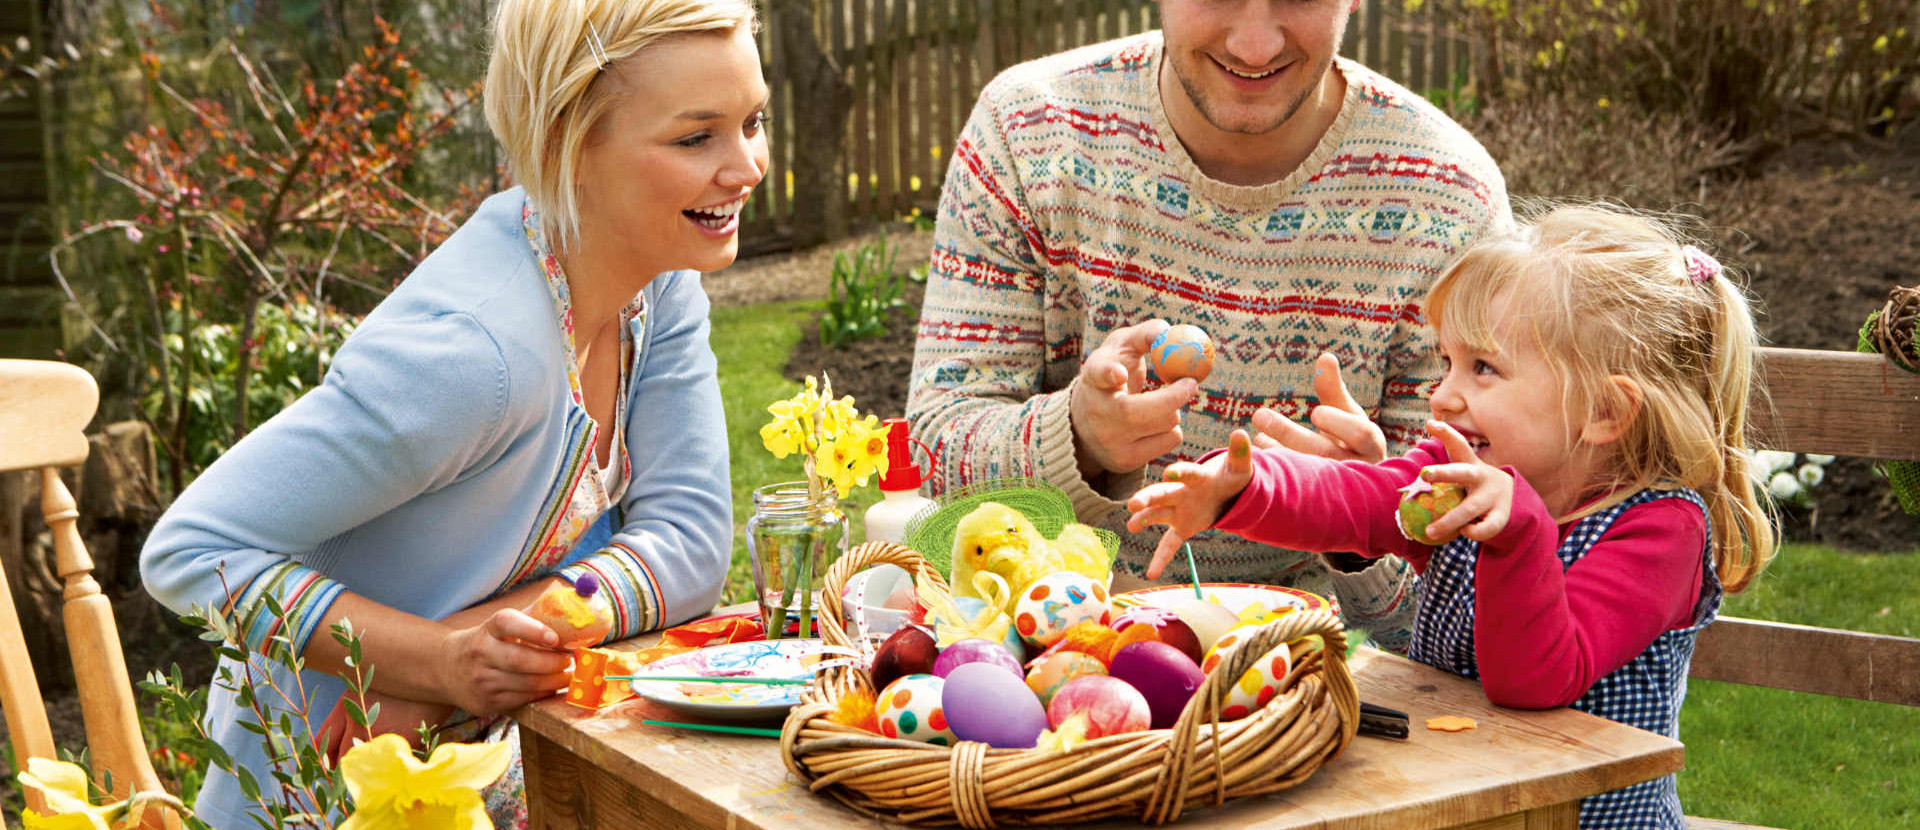 Eine Mutter, ein Vater und Ihr Kind sitzen zusammen an einem Holztisch im Garten und bemalen gemeinsam Ostereier